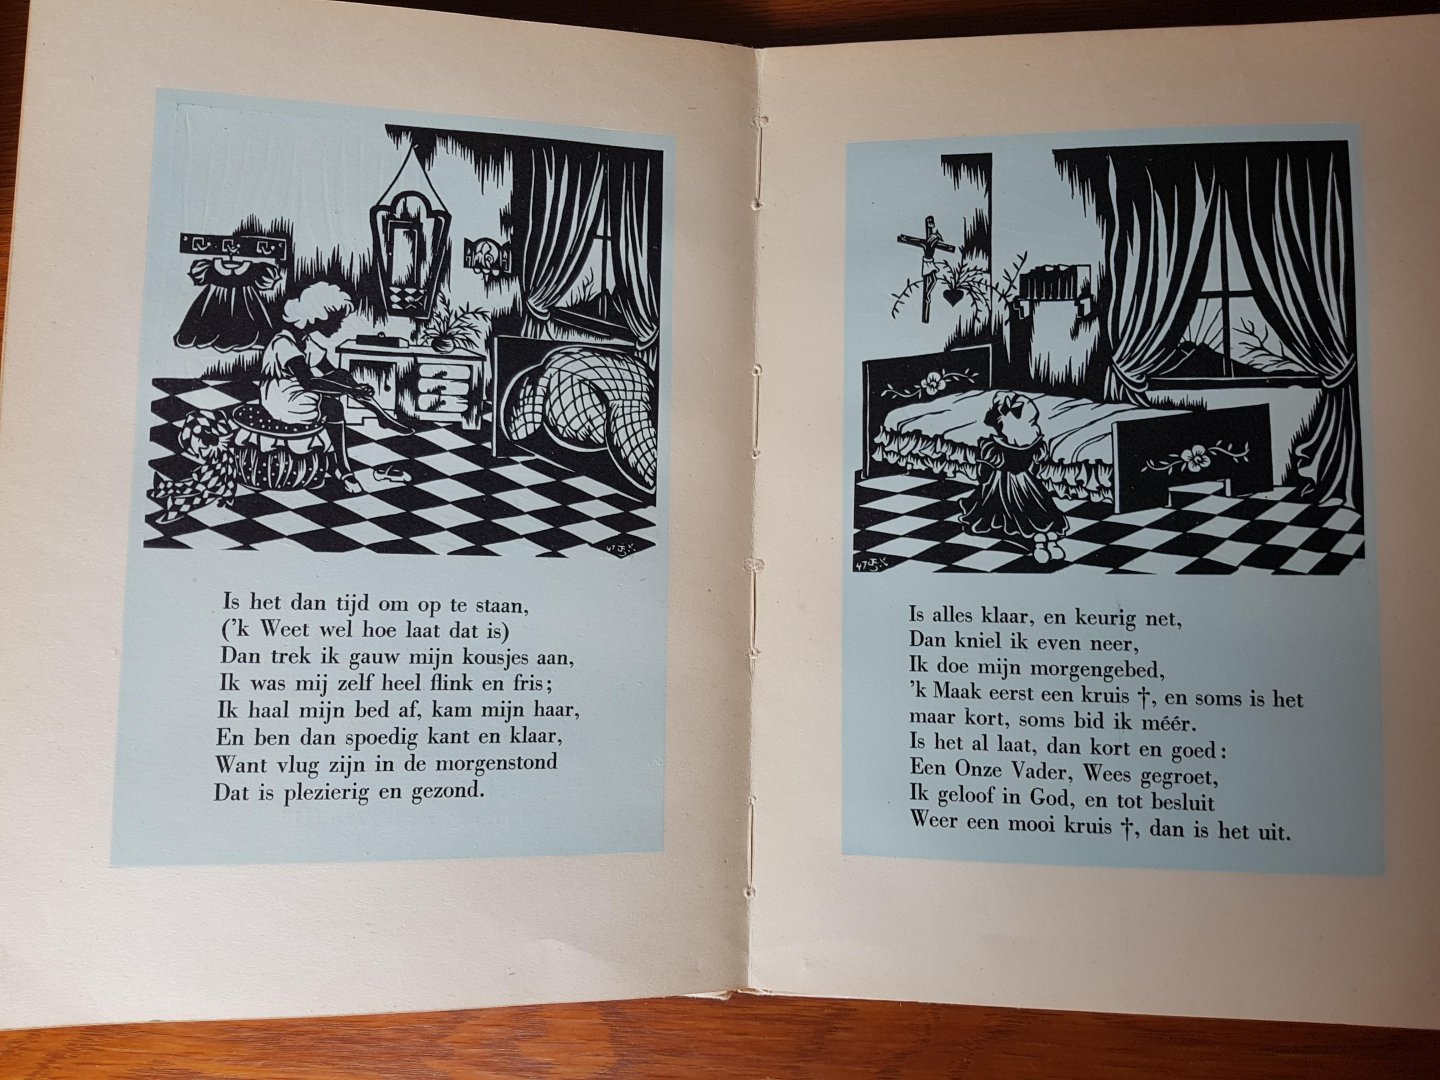 Steenhoff-Smulders, Albertine - De dag van een kind (Communieboekje op rijm) - Op iedere pagina een stichtend rijm verlucht met fraaie houtsneden